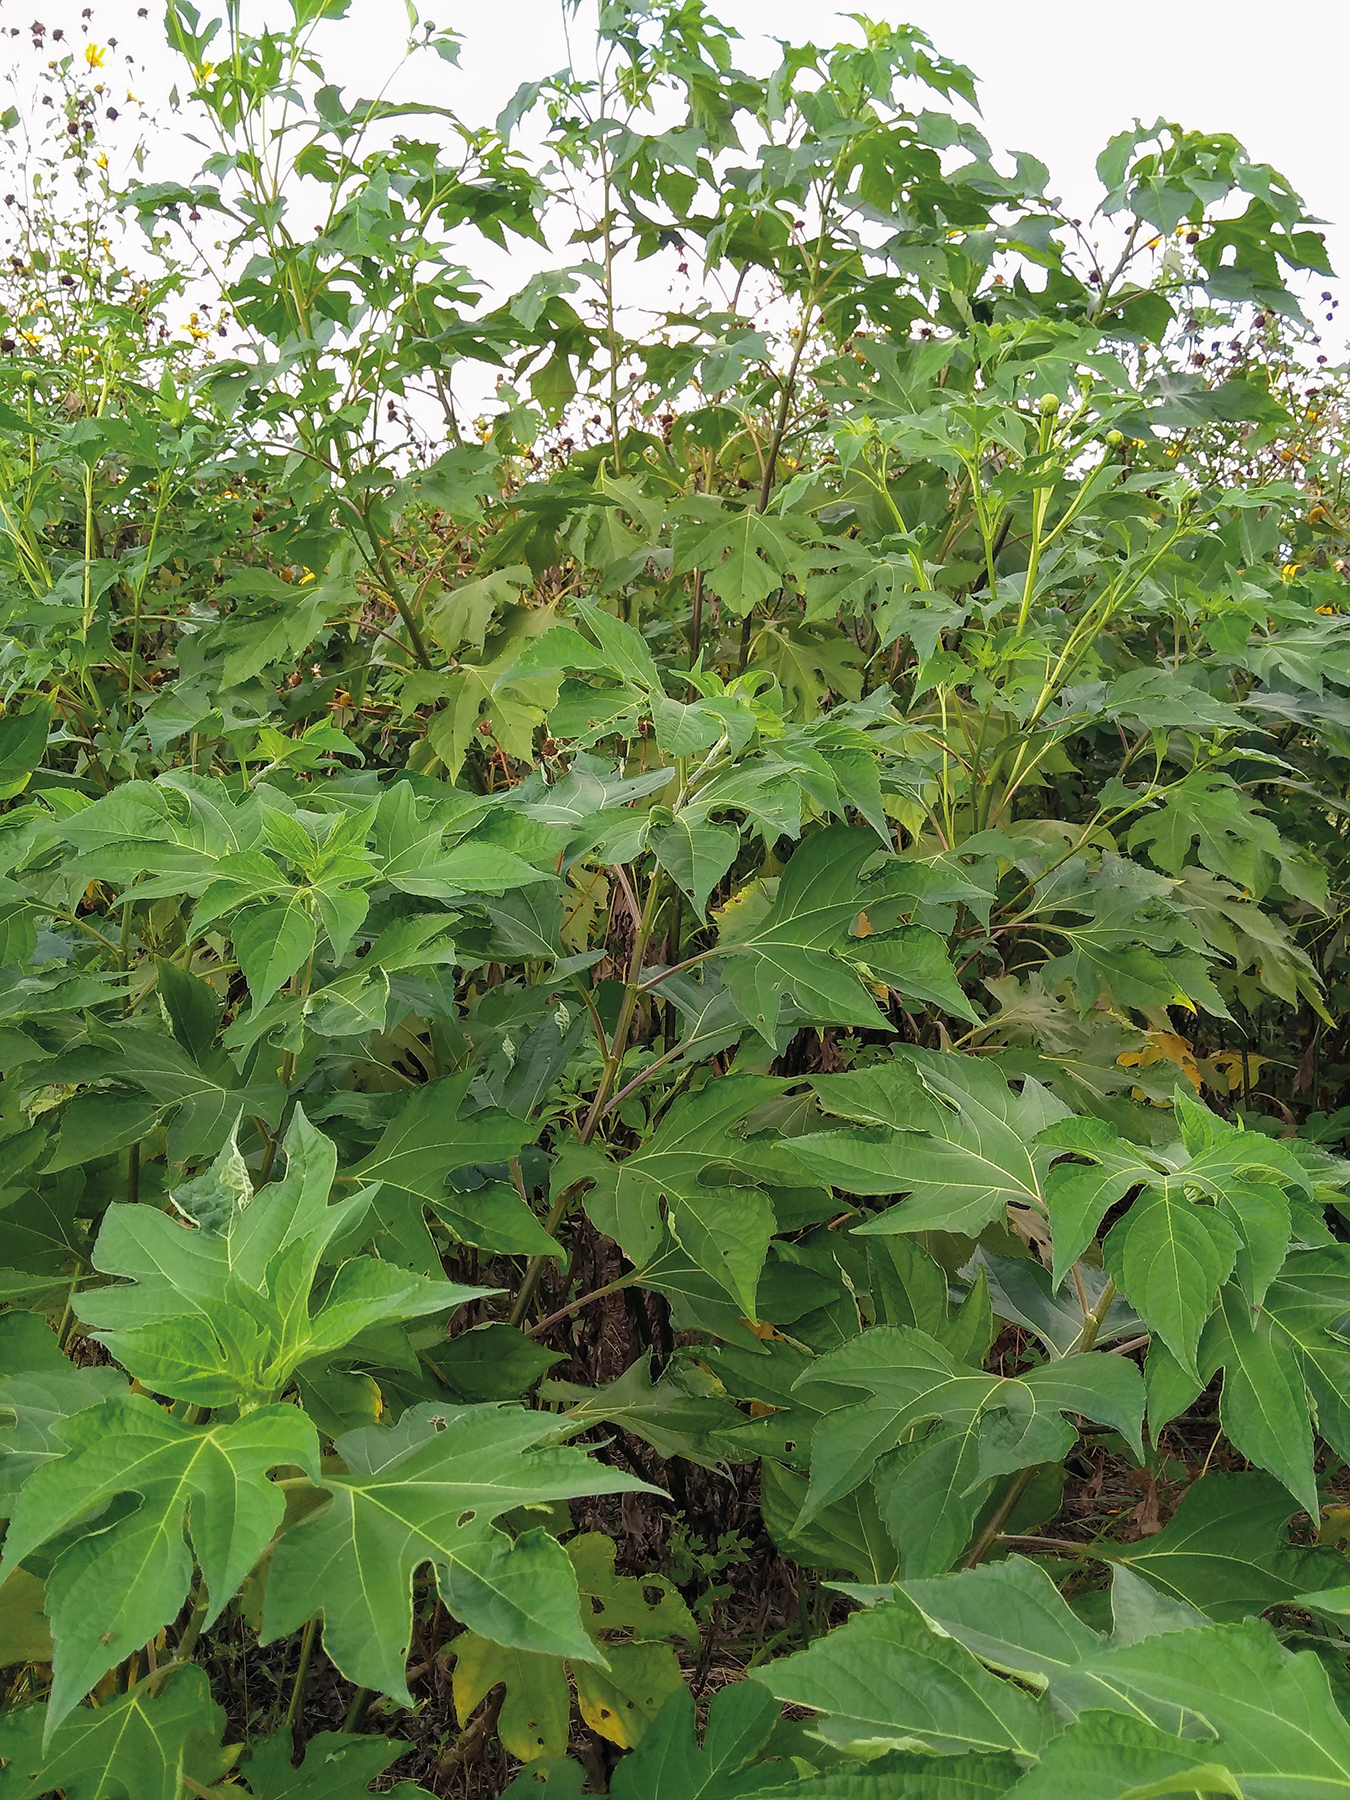 Folhas de Tithonia diversifolia apresentam alta concentração foliar de nitrogênio, fósforo e potássio.